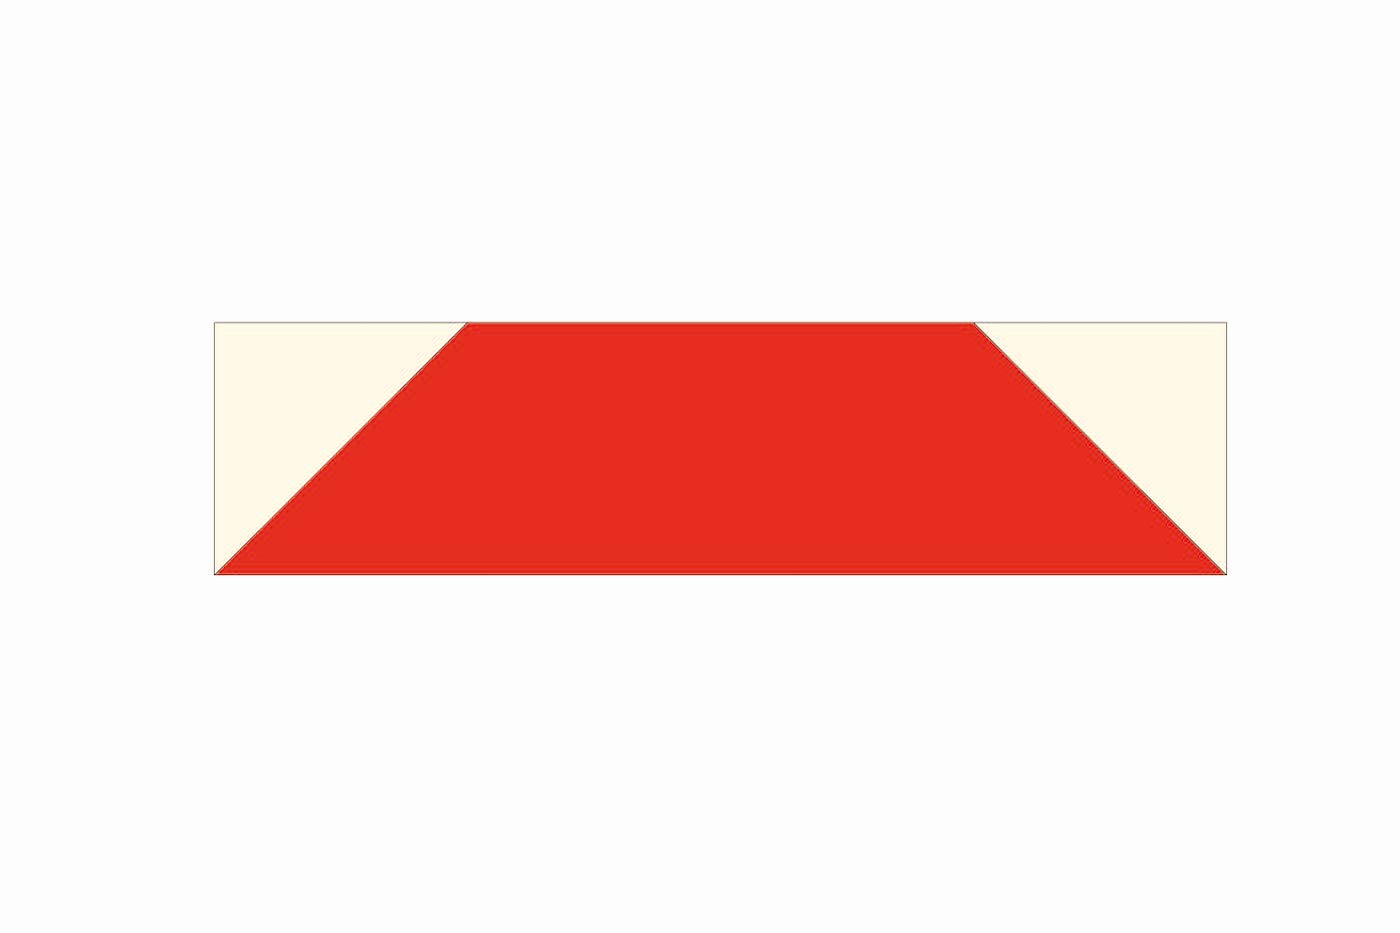 étape du schéma d'assemblage de la courtepointe, forme géométrique avec carrés et triangles bleu marine et crème